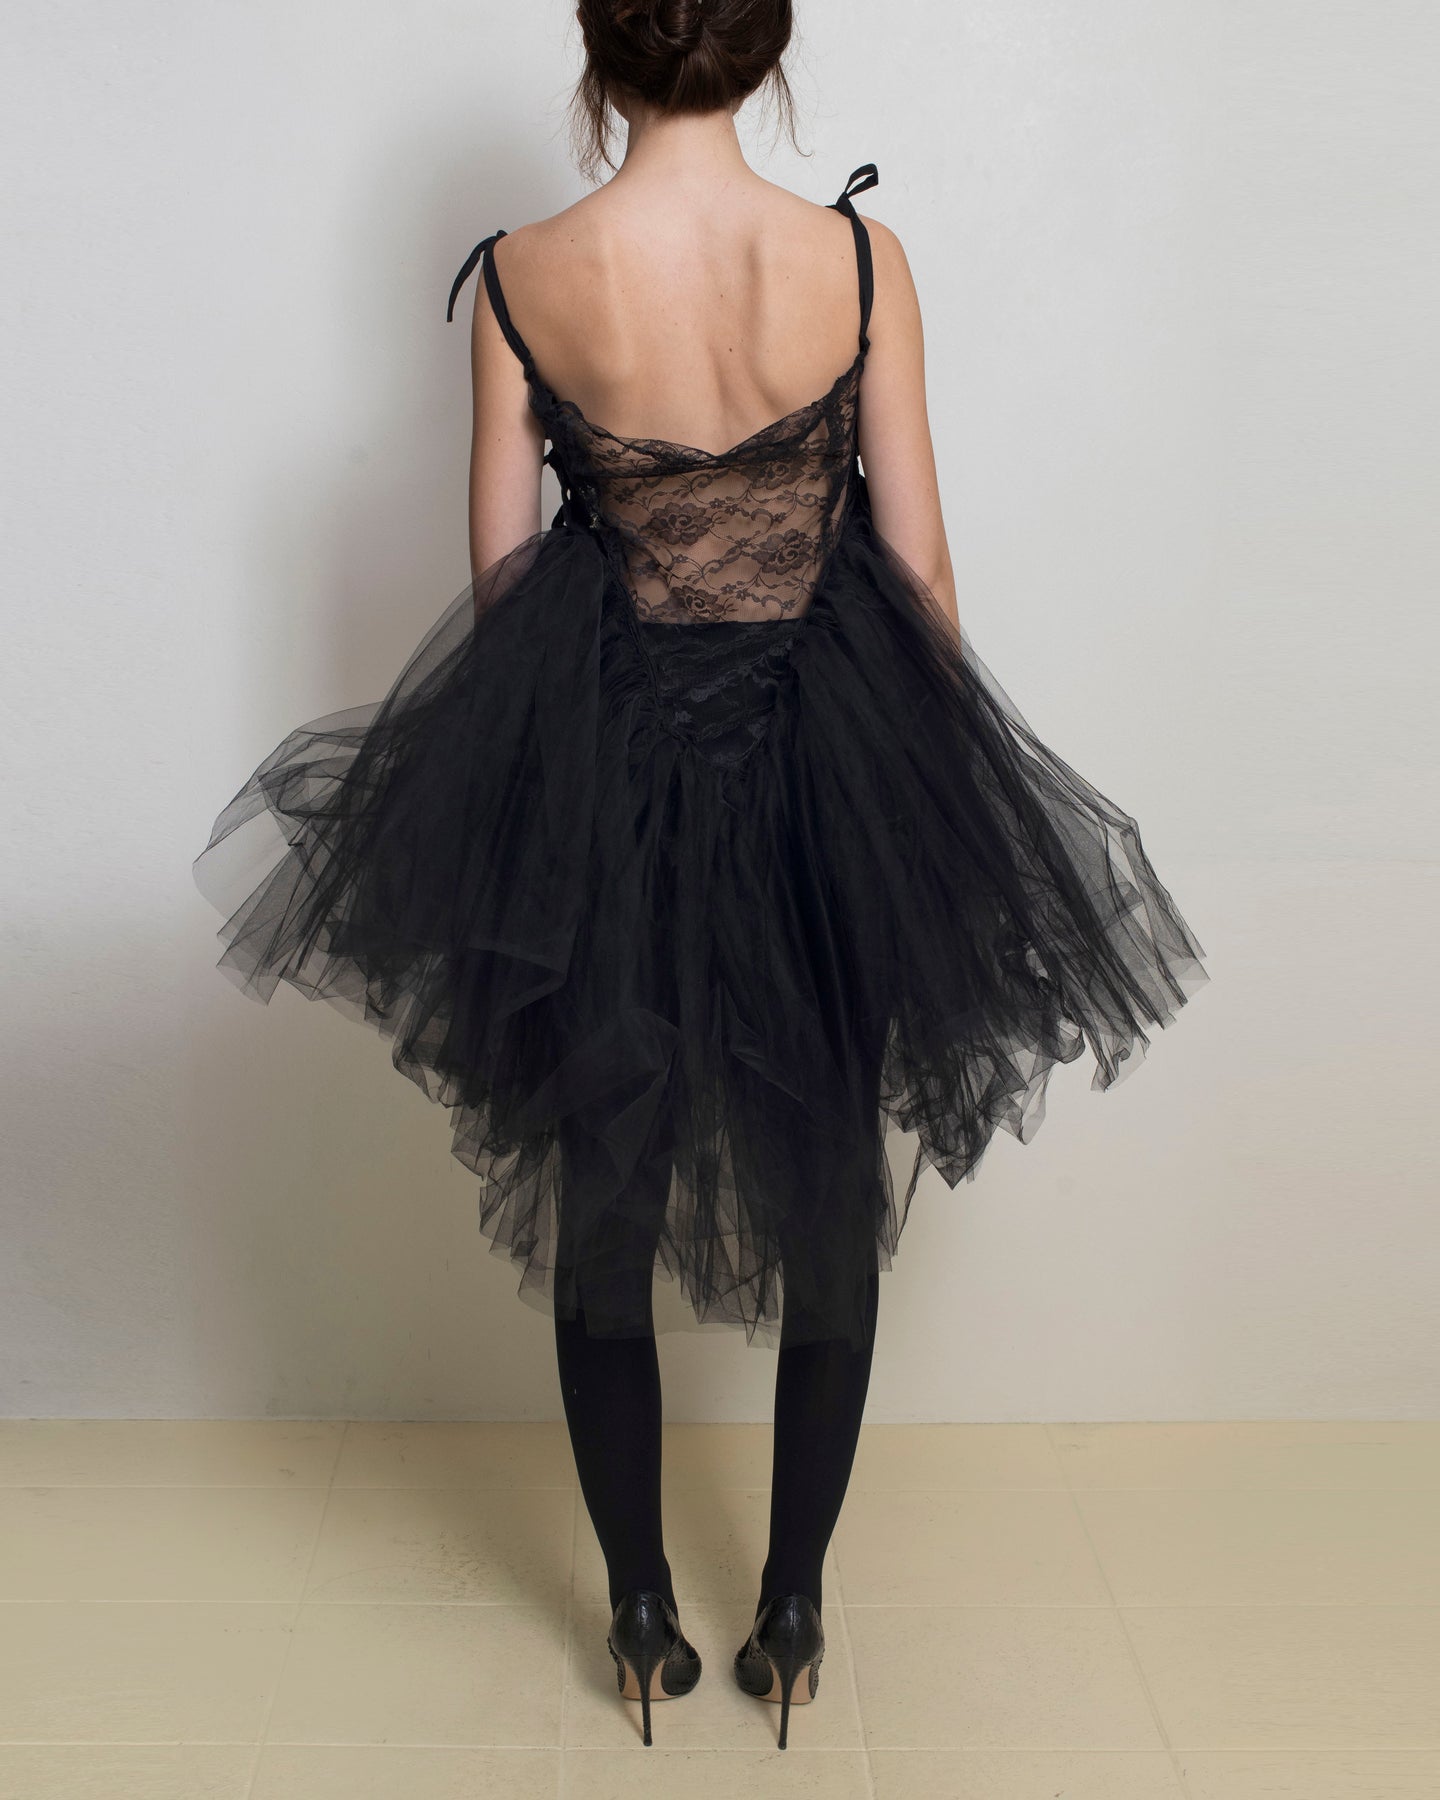 Meg Beck - Black Naomi Dress